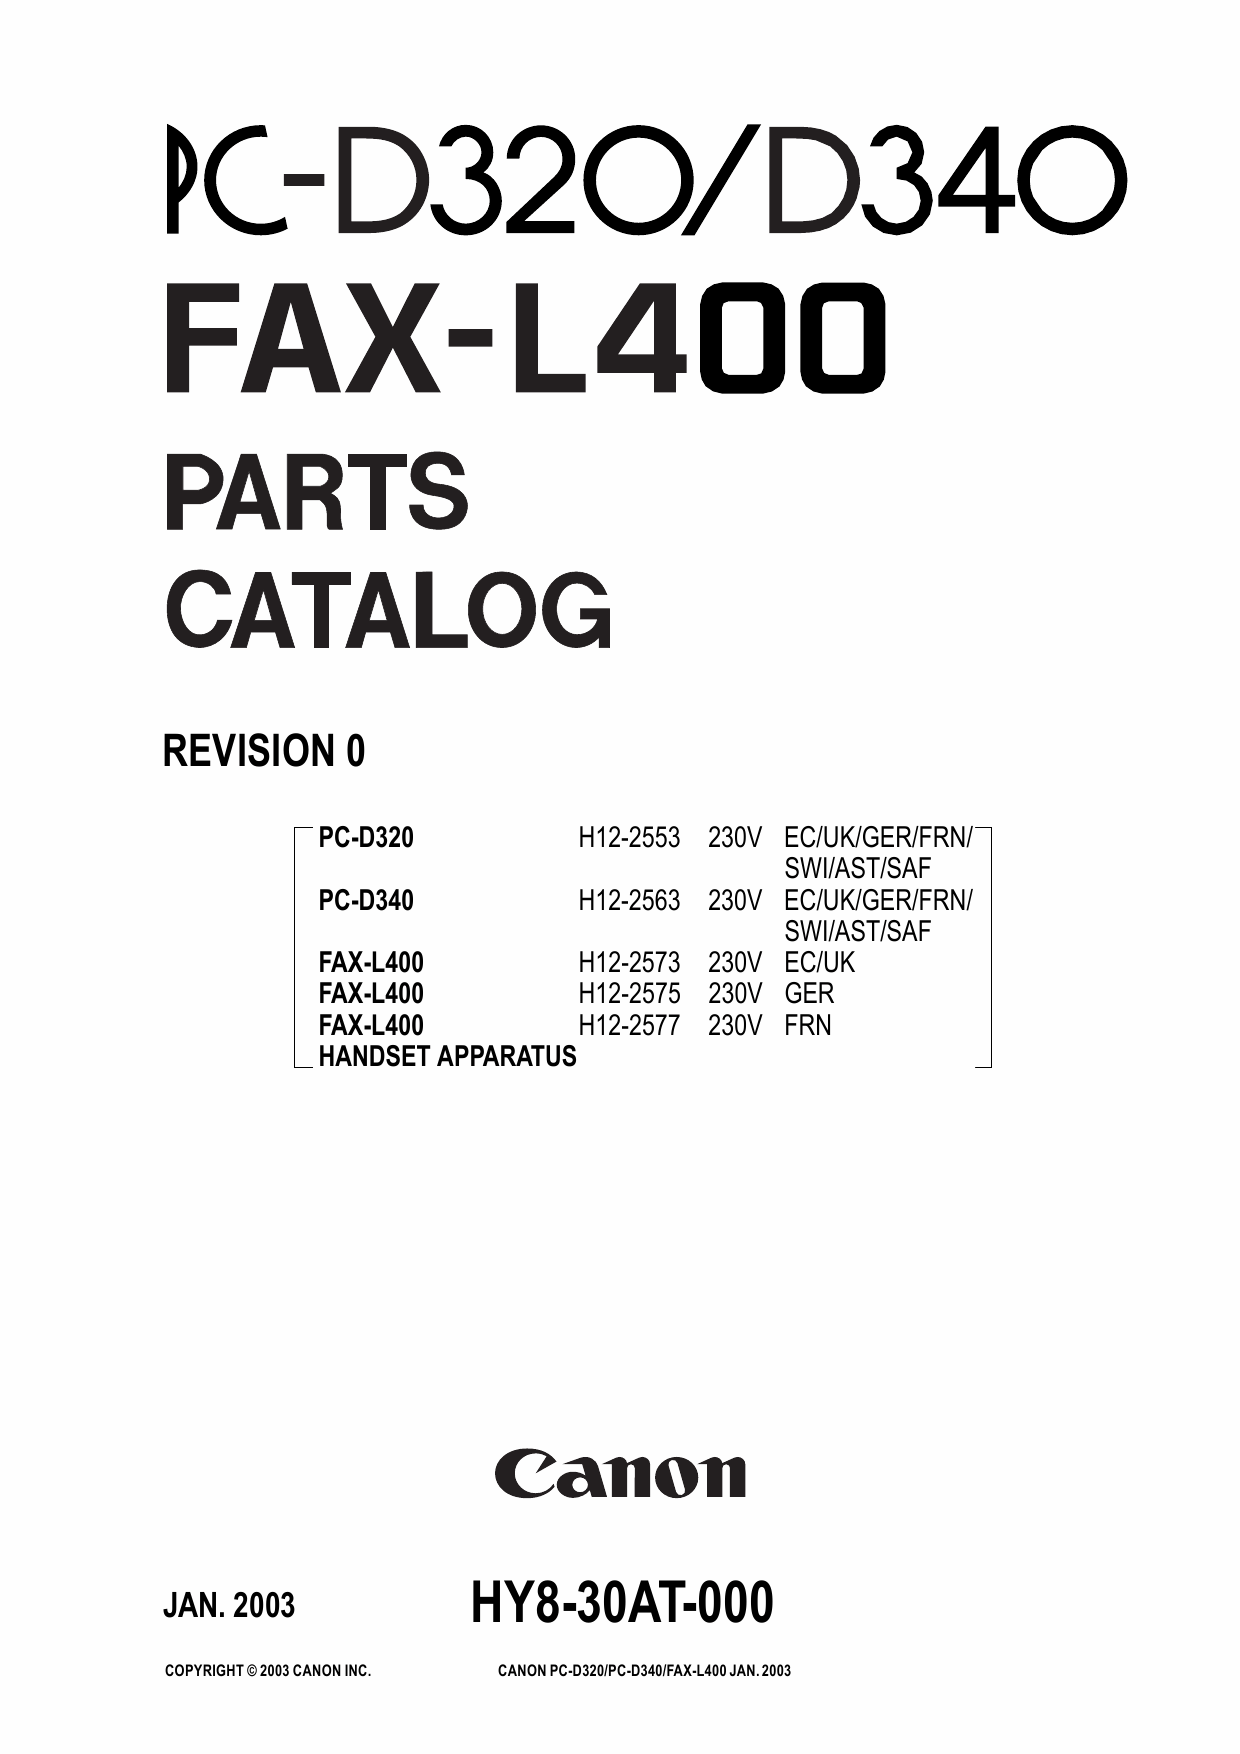 Canon FAX L400 Parts Catalog Manual-1